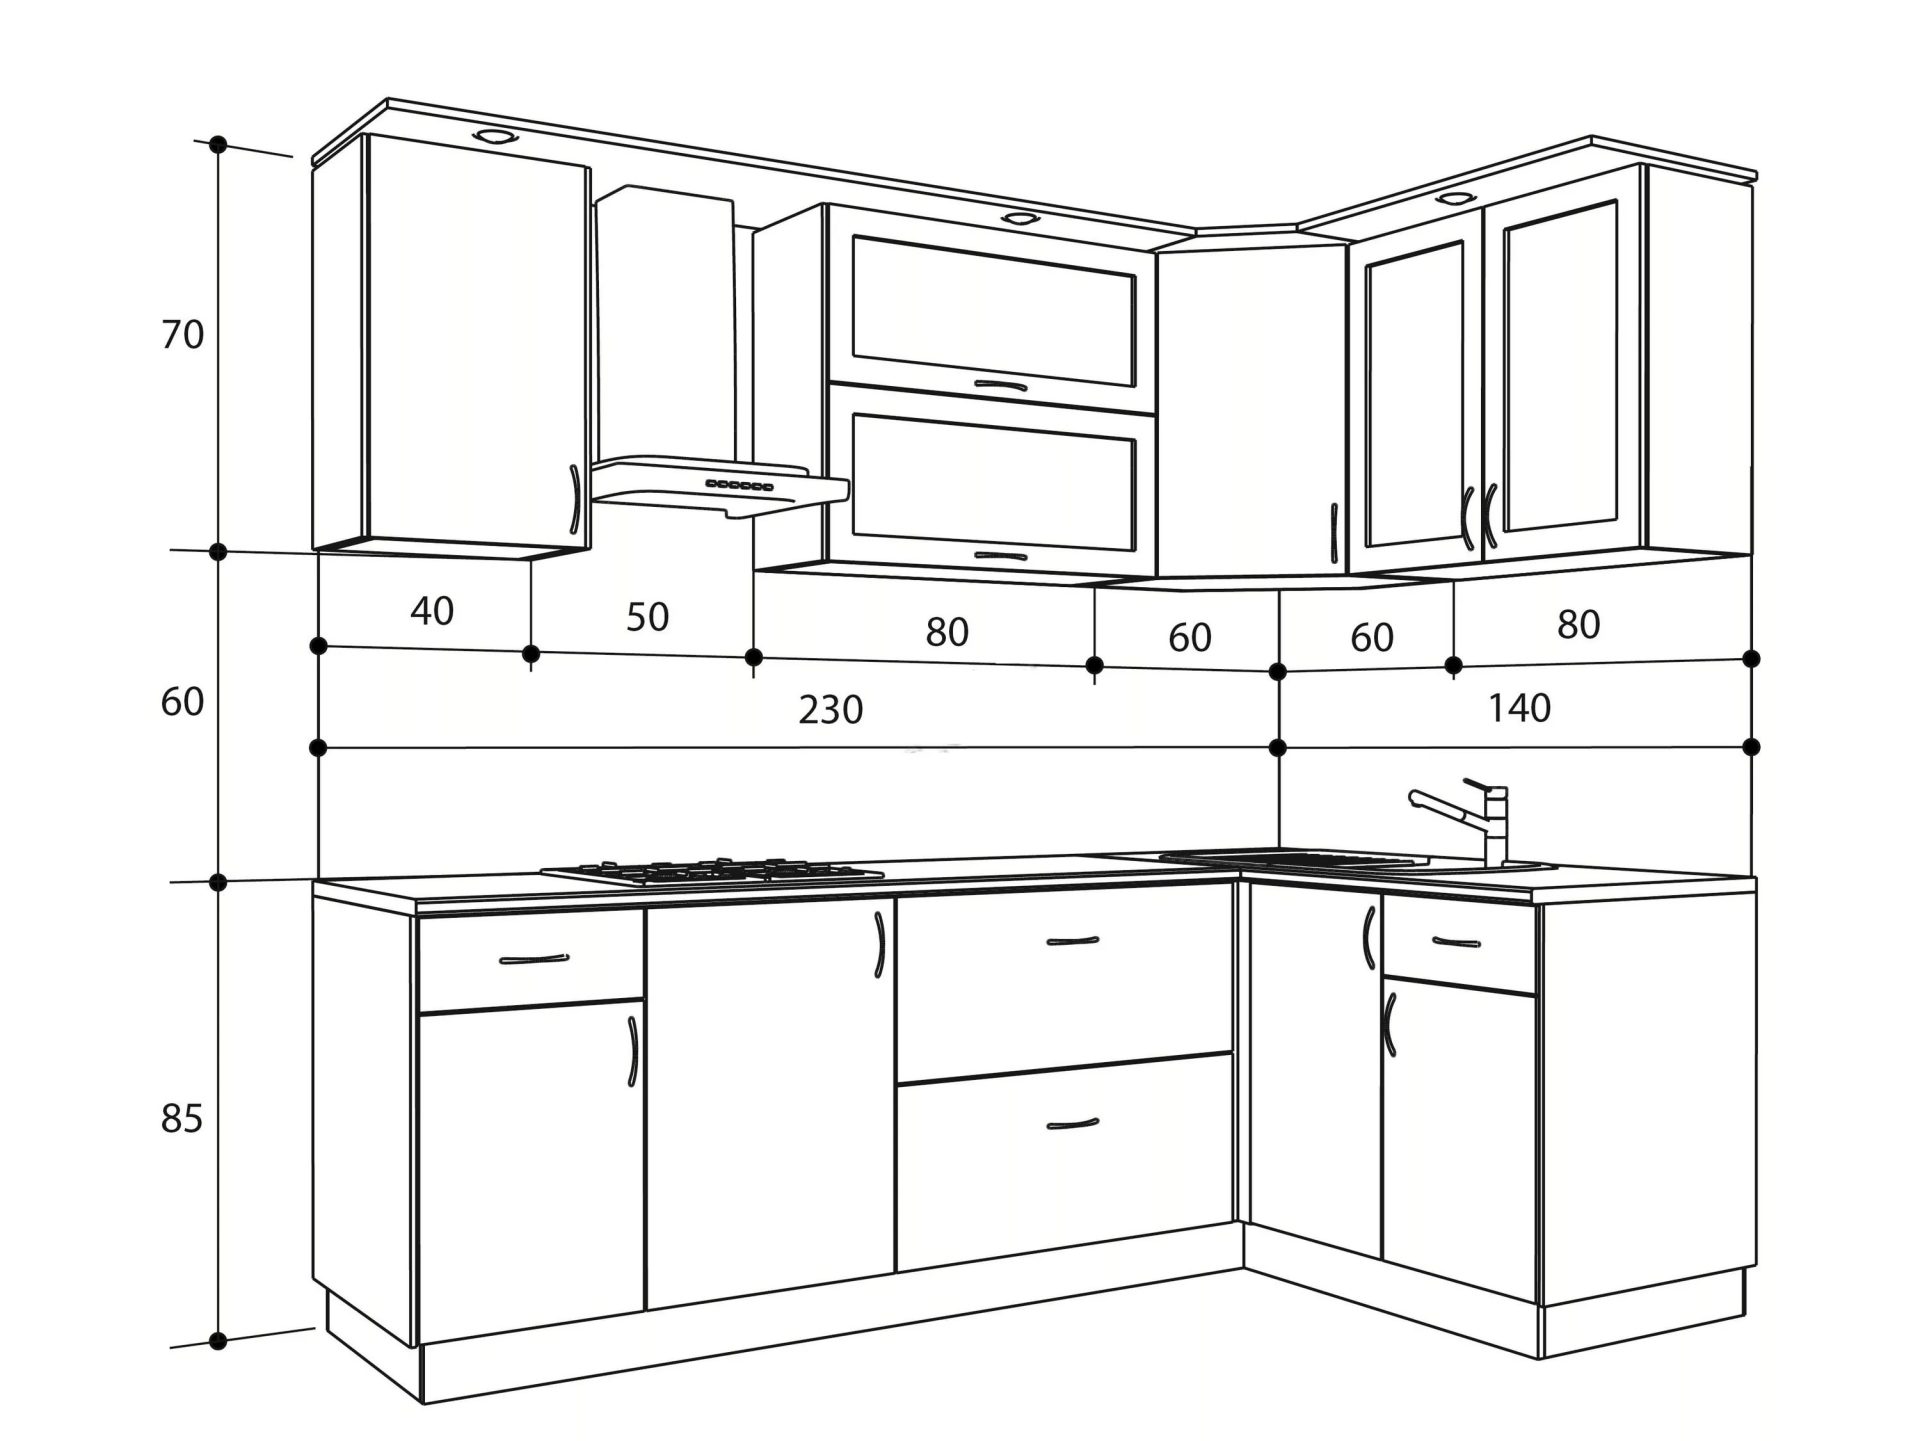 Схема расположения кухонной мебели с размерами